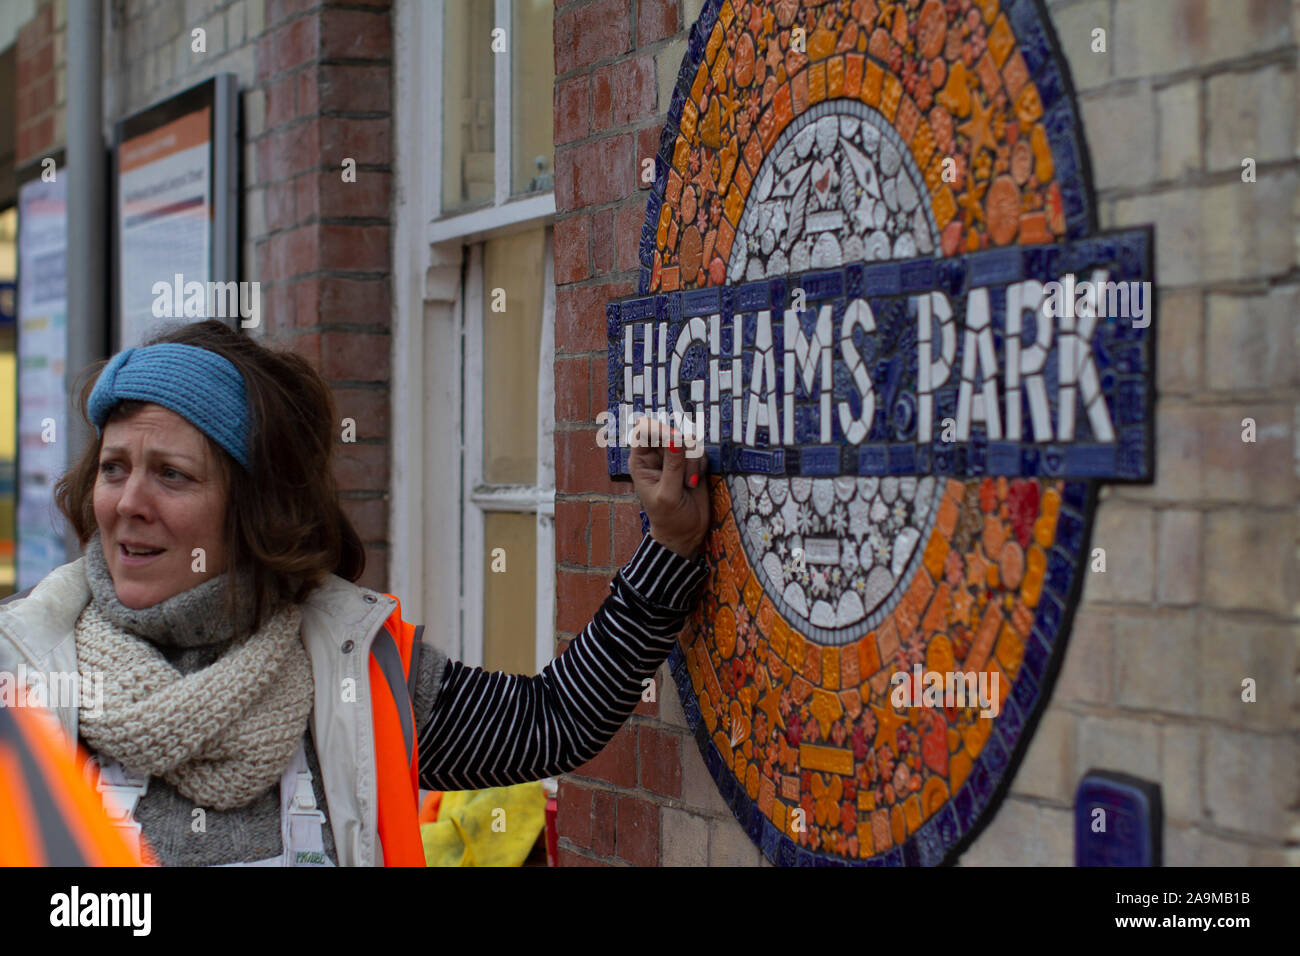 Cocarde de la mosaïque sur London Overground gare , Highams Park, de l'artiste Maud Milton représenté à gauche. Partie de Leyton London Borough of Culture 2019 Waltham Forest est le premier département de la Culture Banque D'Images